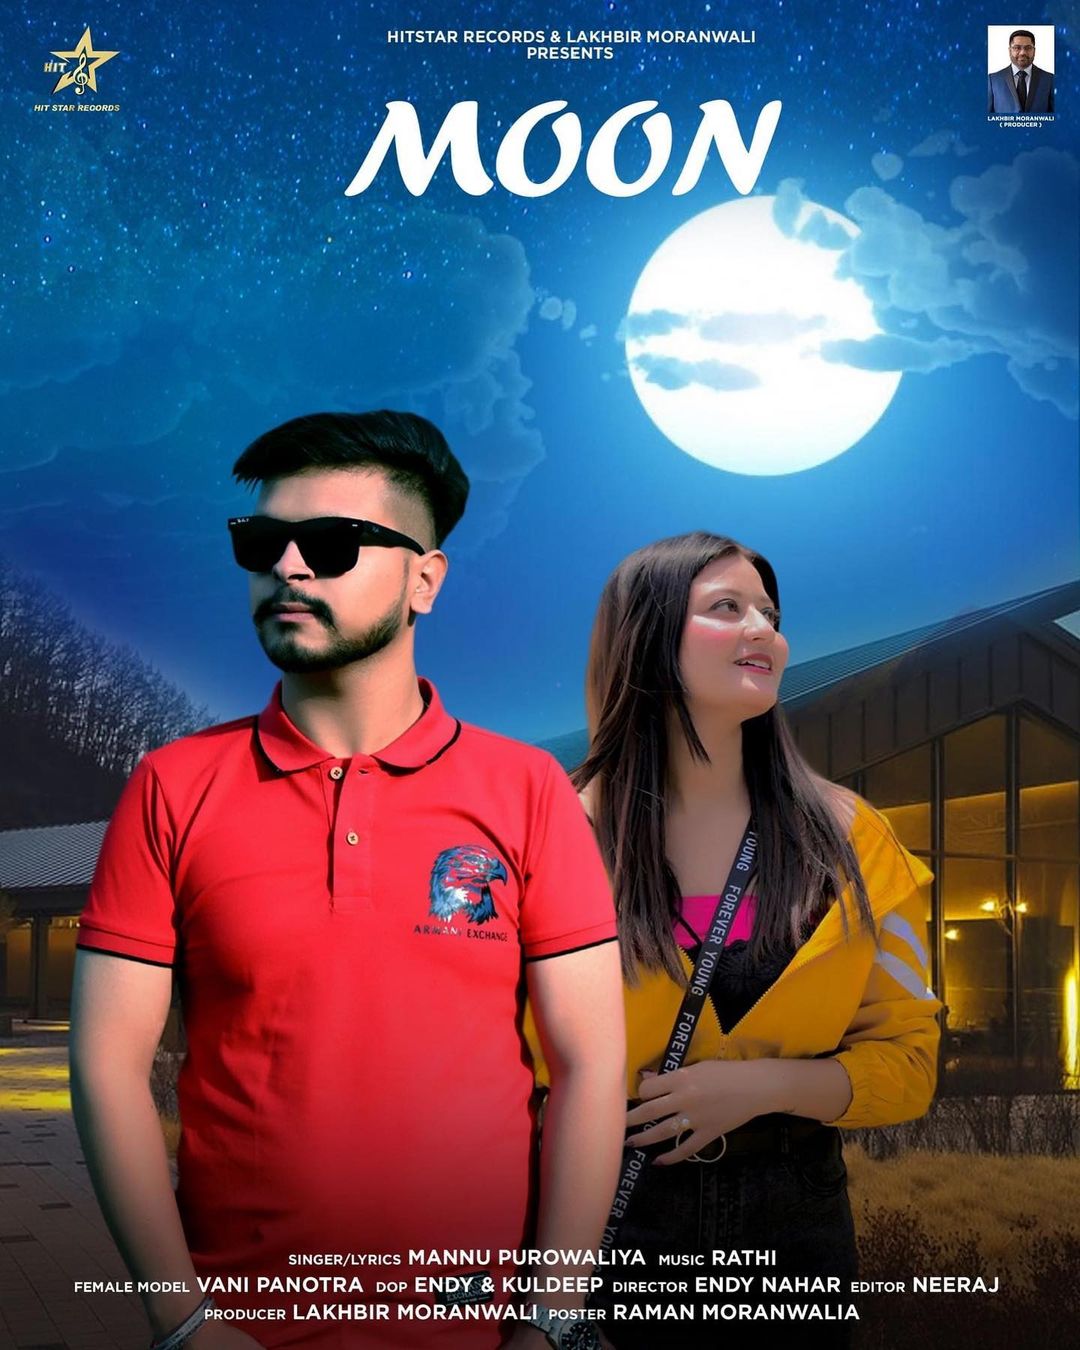 Moon" song is getting overwhelming response. Singer "Mannu Purowaliya